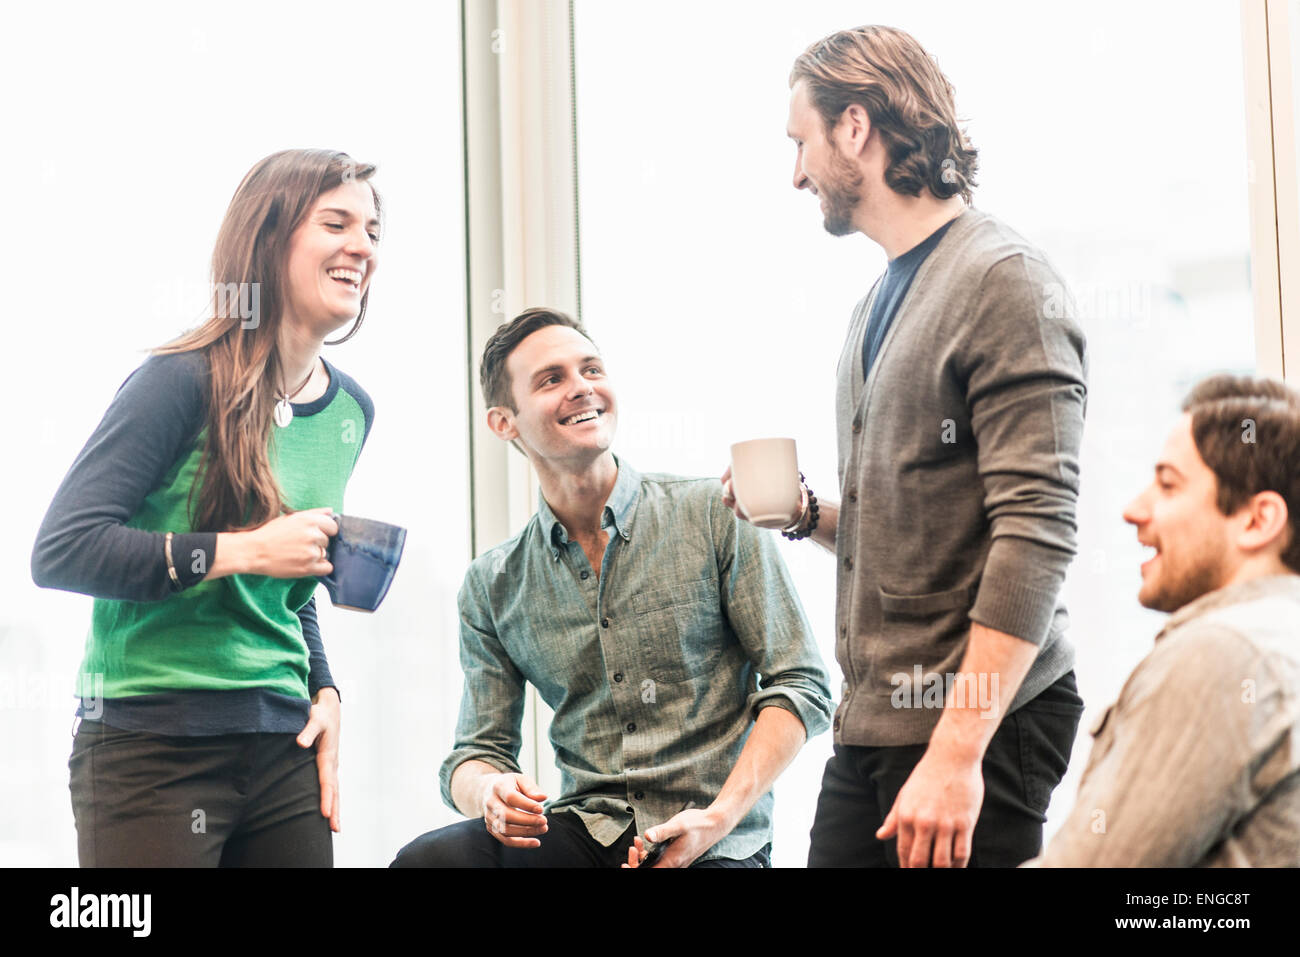 Vier arbeiten Kolleginnen und Kollegen auf eine Pause, gemeinsam lachen. Stockfoto